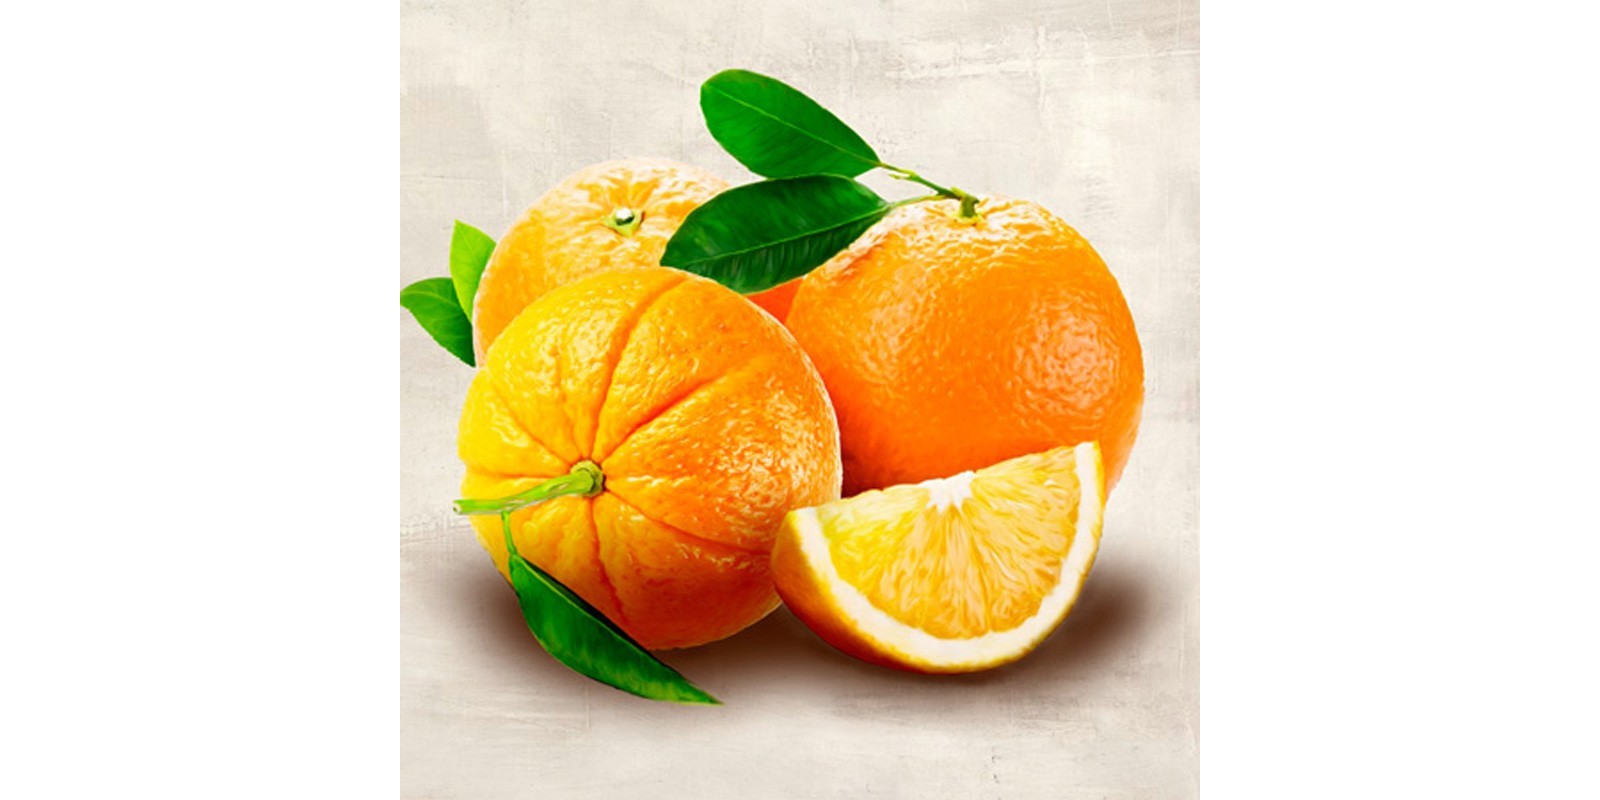 Remo Barbieri - Oranges